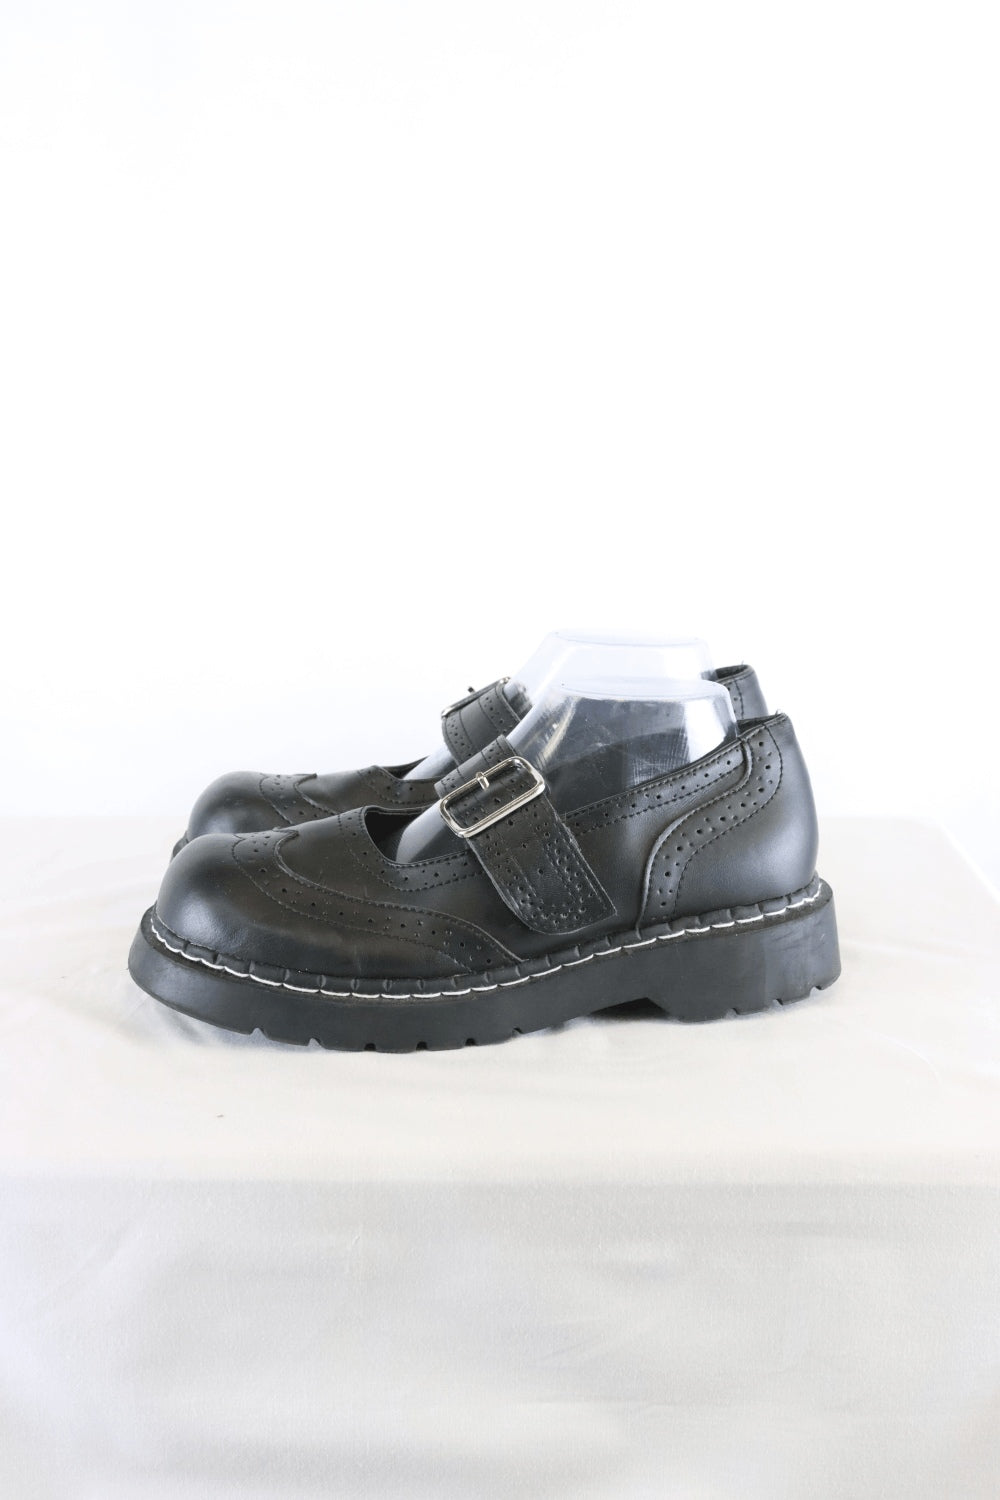 Tuk Black Shoes 8